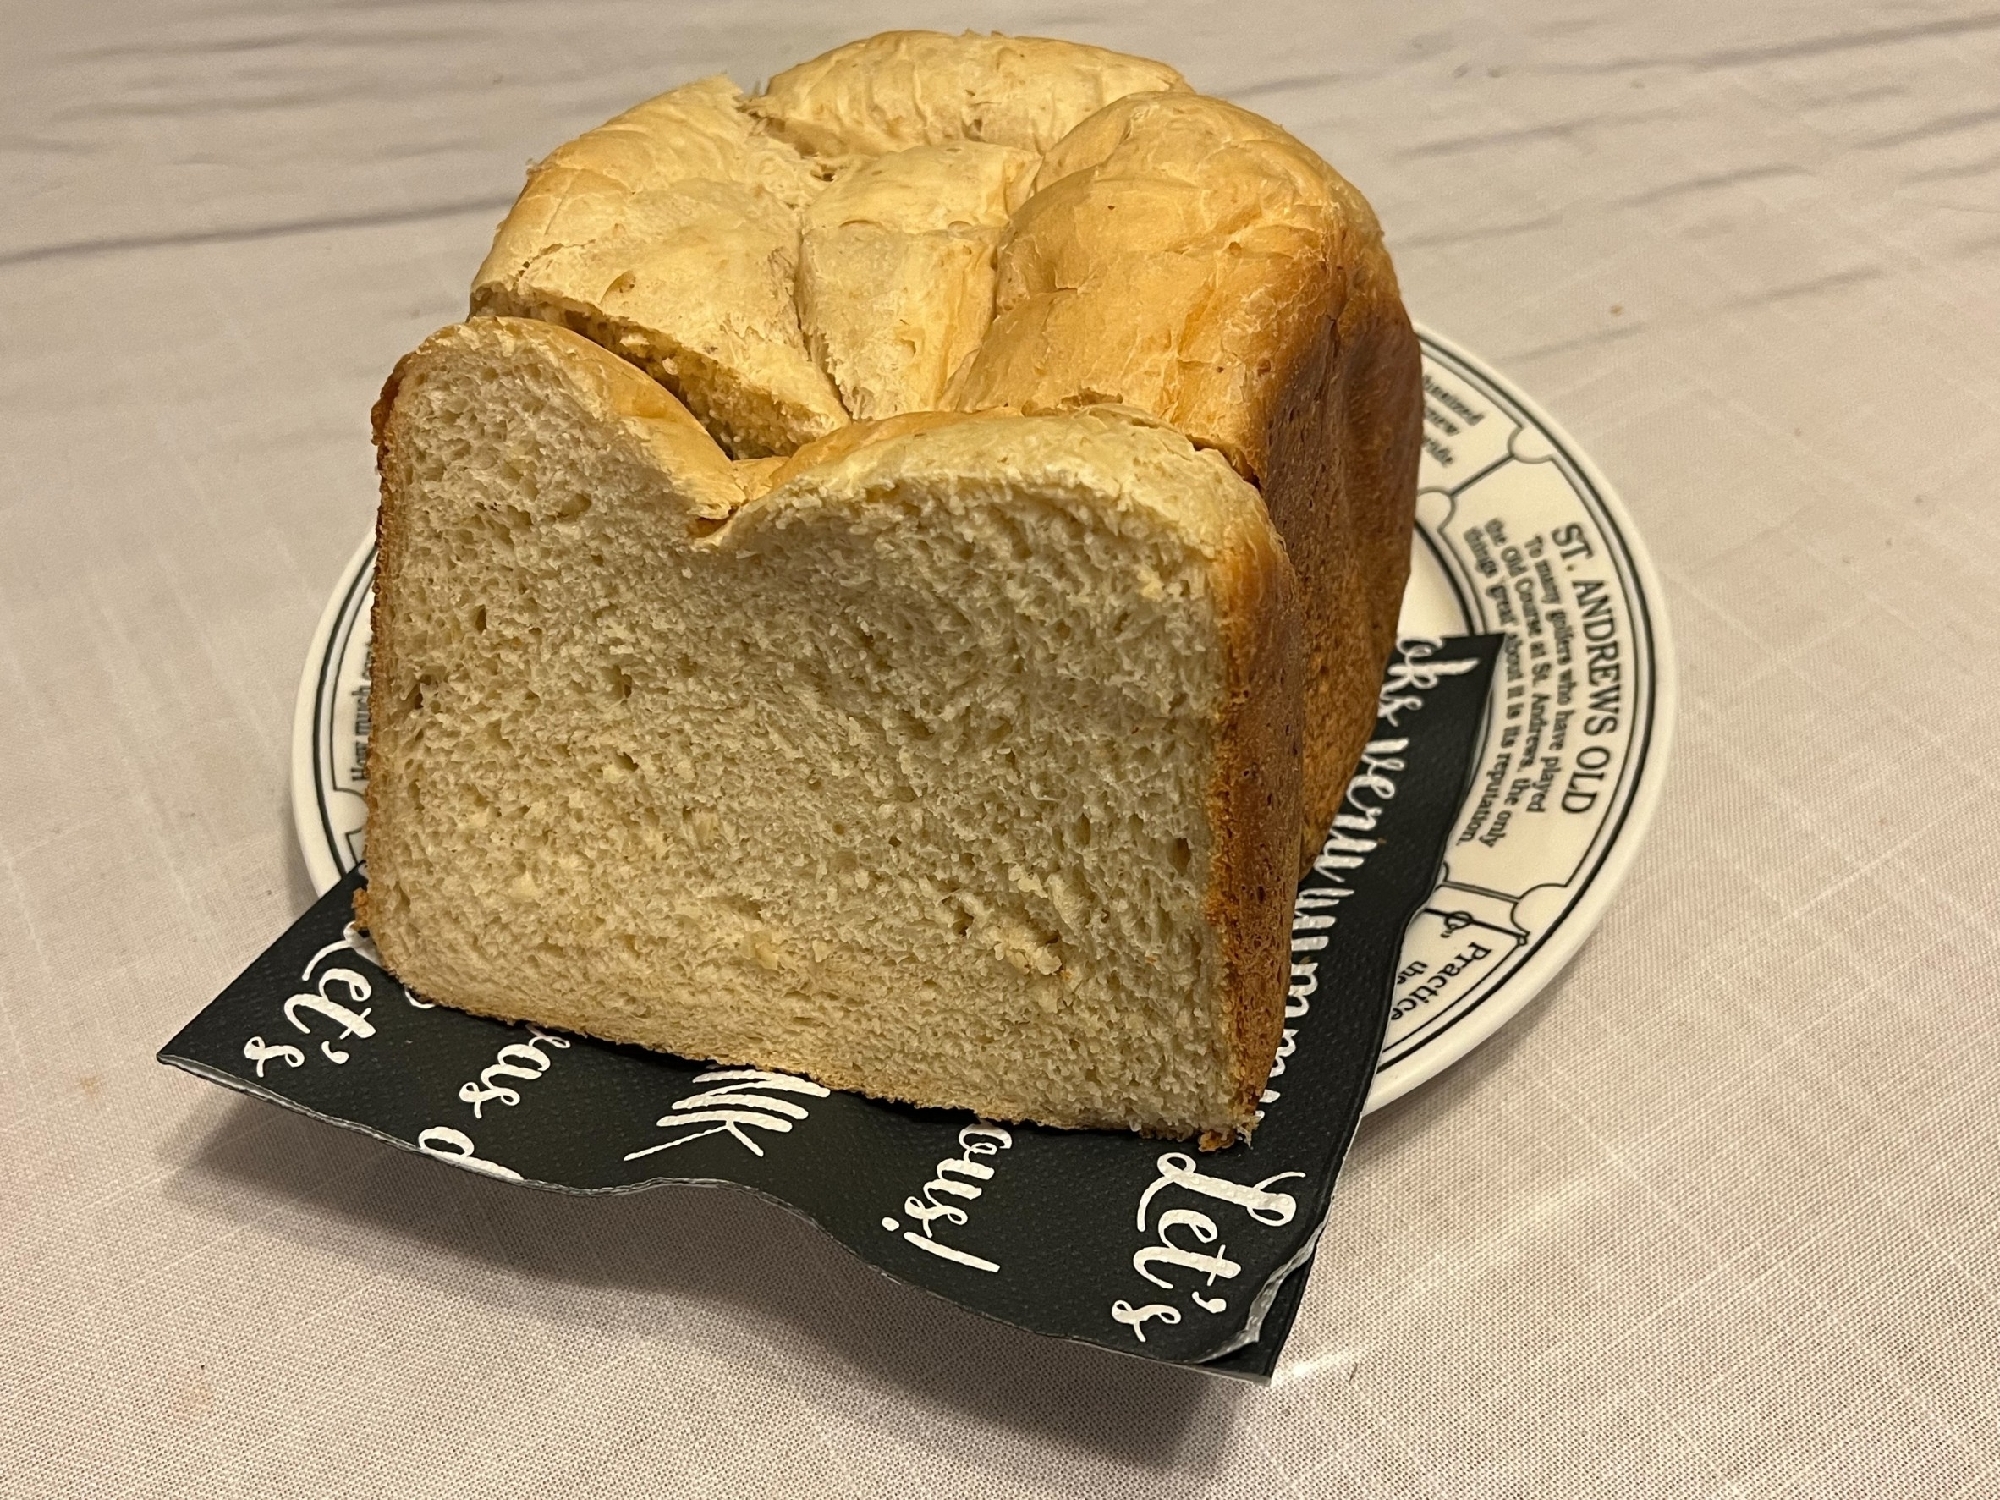 オートミール食パン